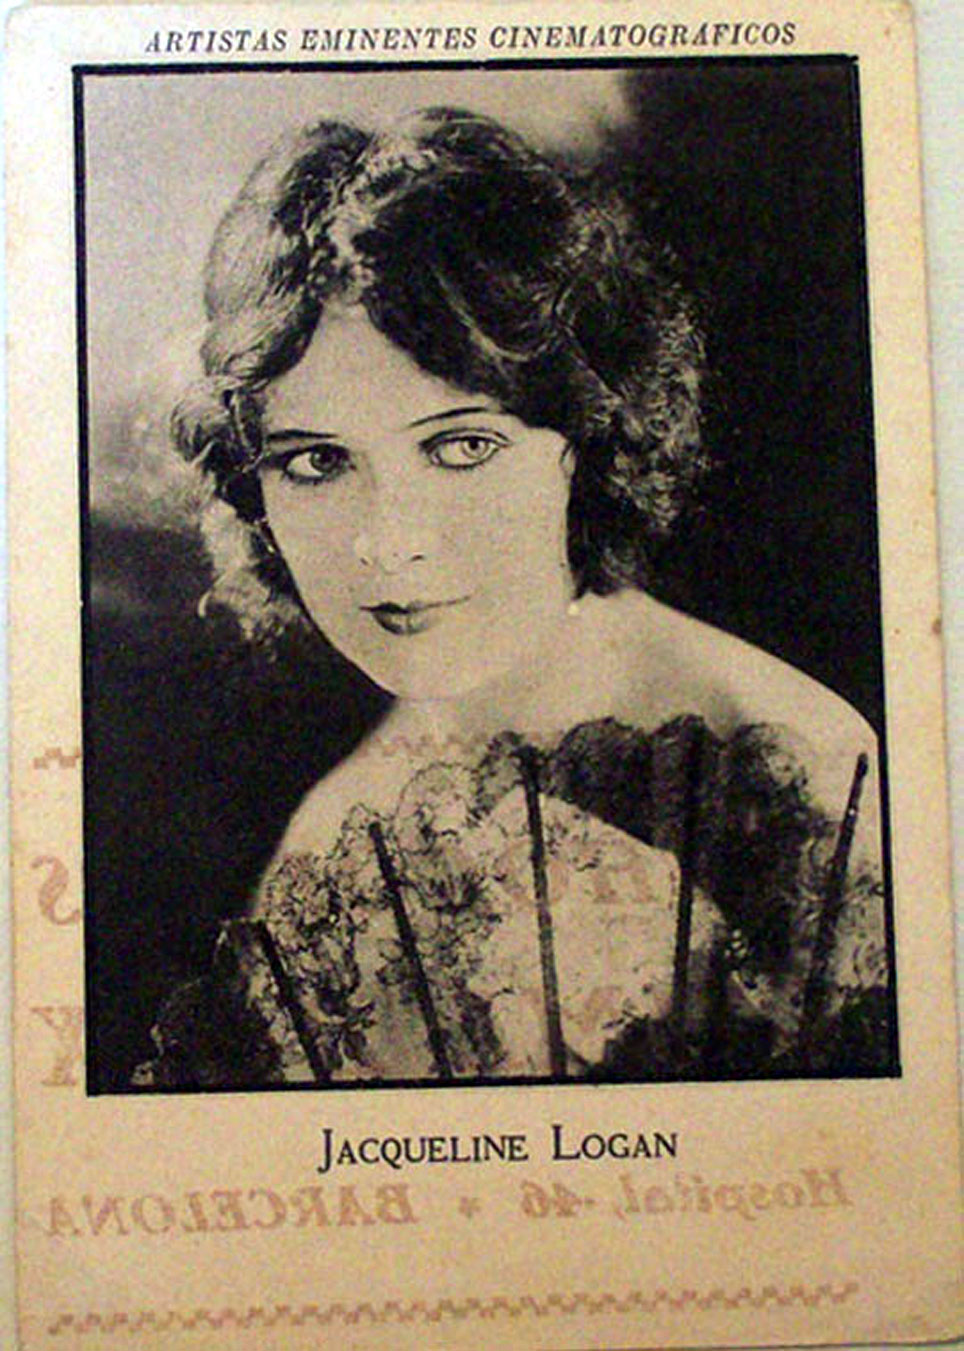 JACQUELINE LOGAN